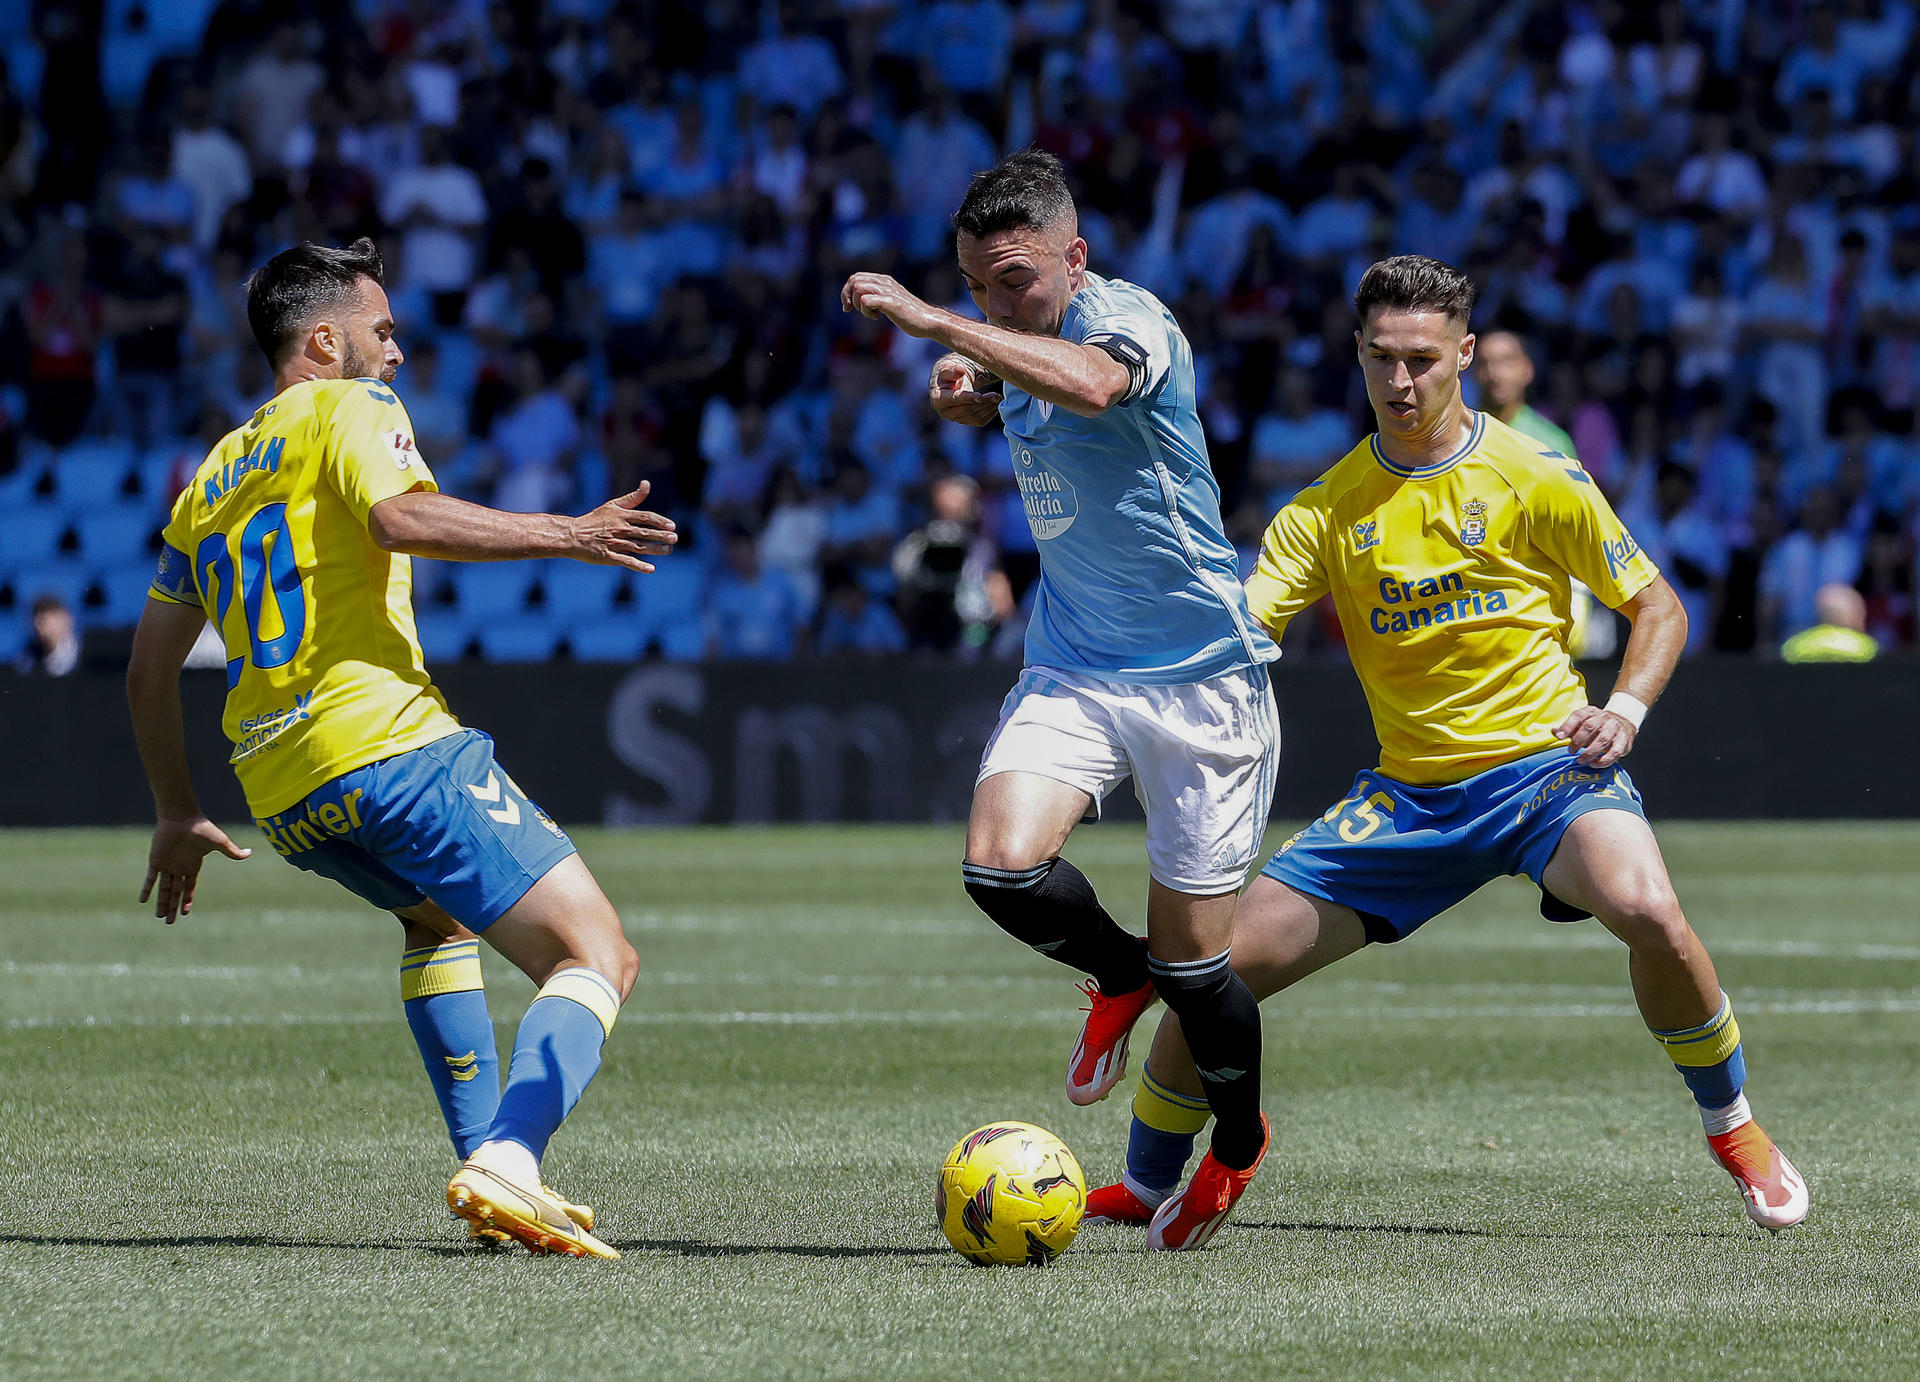 El jugador del Celta de Vigo Iago Aspas (c) disputa el balón con Kiriam y Mármol (d), de Las Palmas, durante el partido de Liga celebrado este sábado en el estadio Balaídos de Vigo. EFE / Salvador Sas
